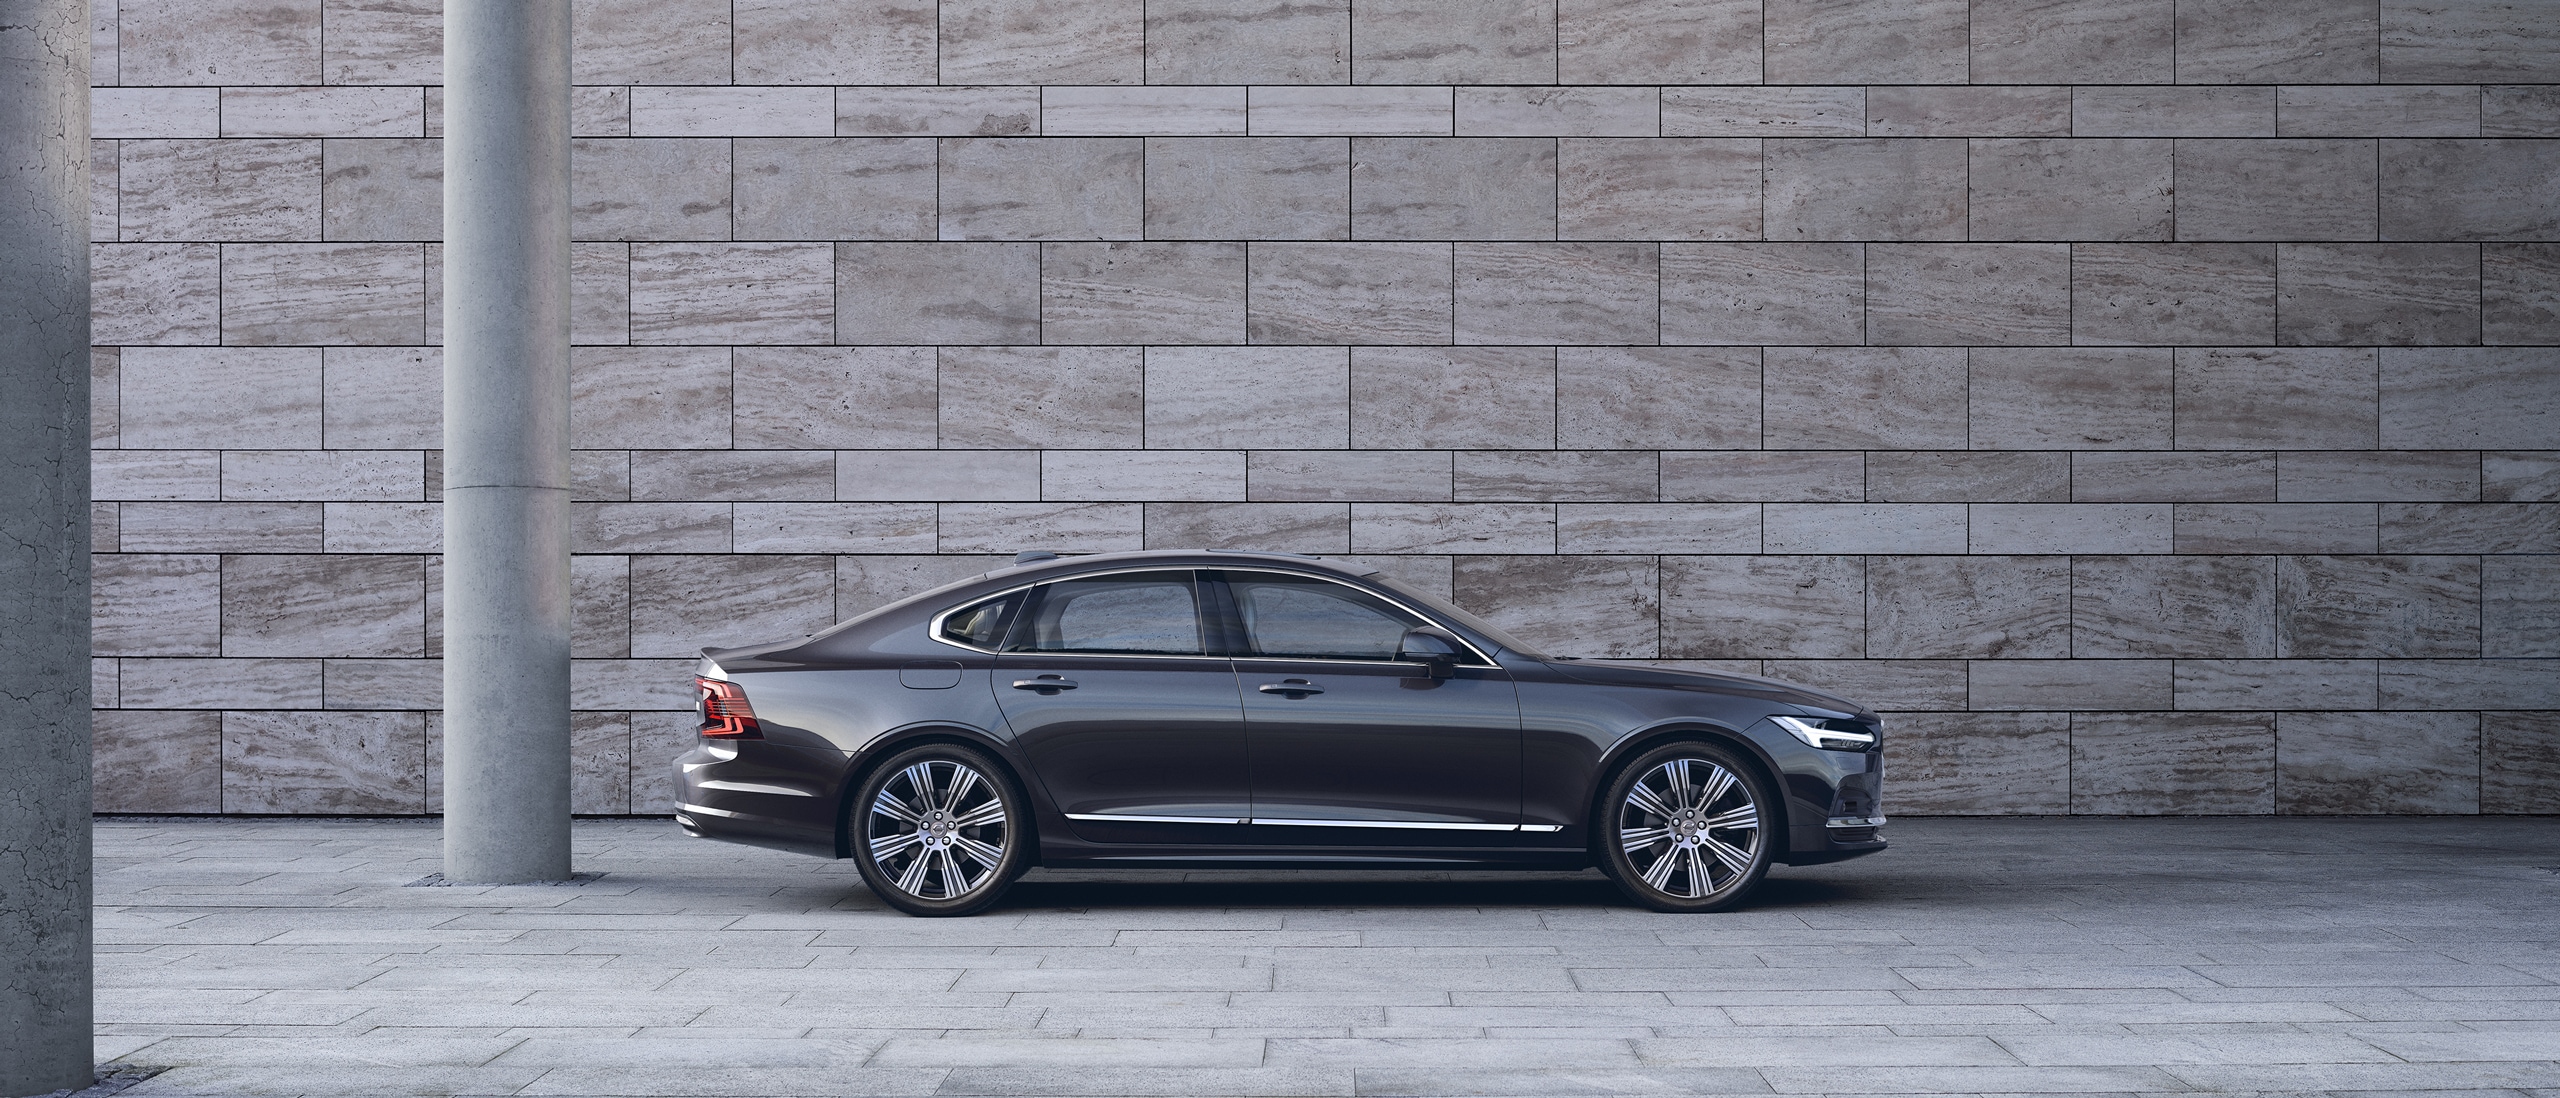 Seitenansicht eines Volvo S90, der vor einer grauen Betonwand steht.